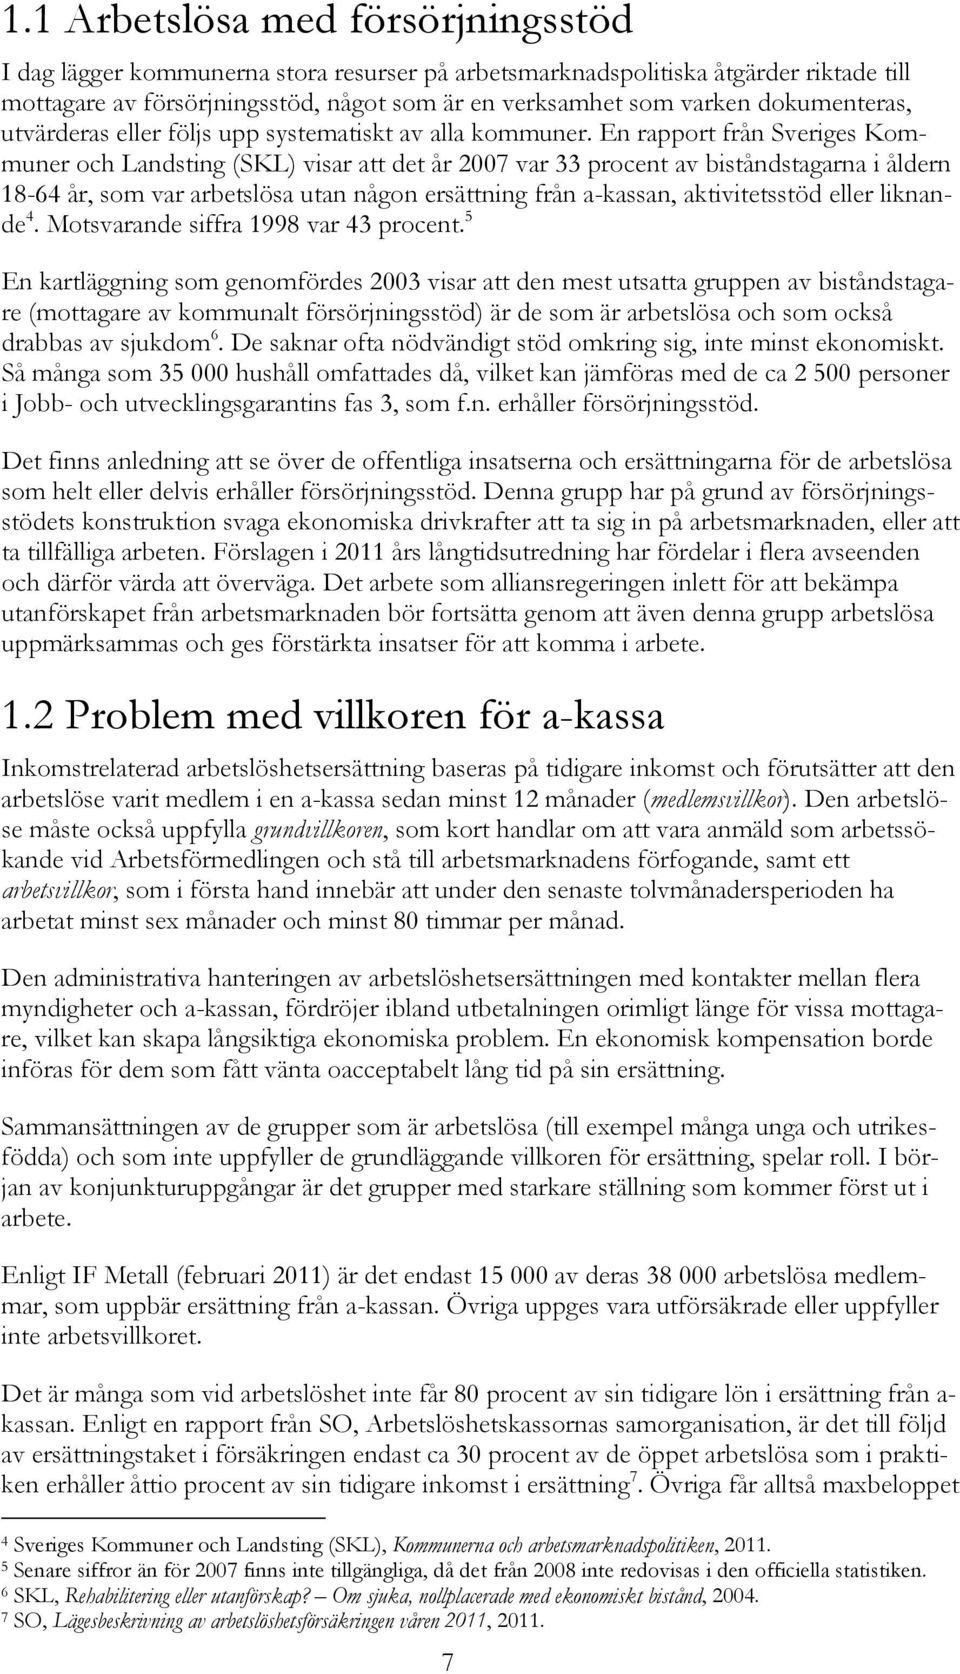 En rapport från Sveriges Kommuner och Landsting (SKL) visar att det år 2007 var 33 procent av biståndstagarna i åldern 18-64 år, som var arbetslösa utan någon ersättning från a-kassan, aktivitetsstöd